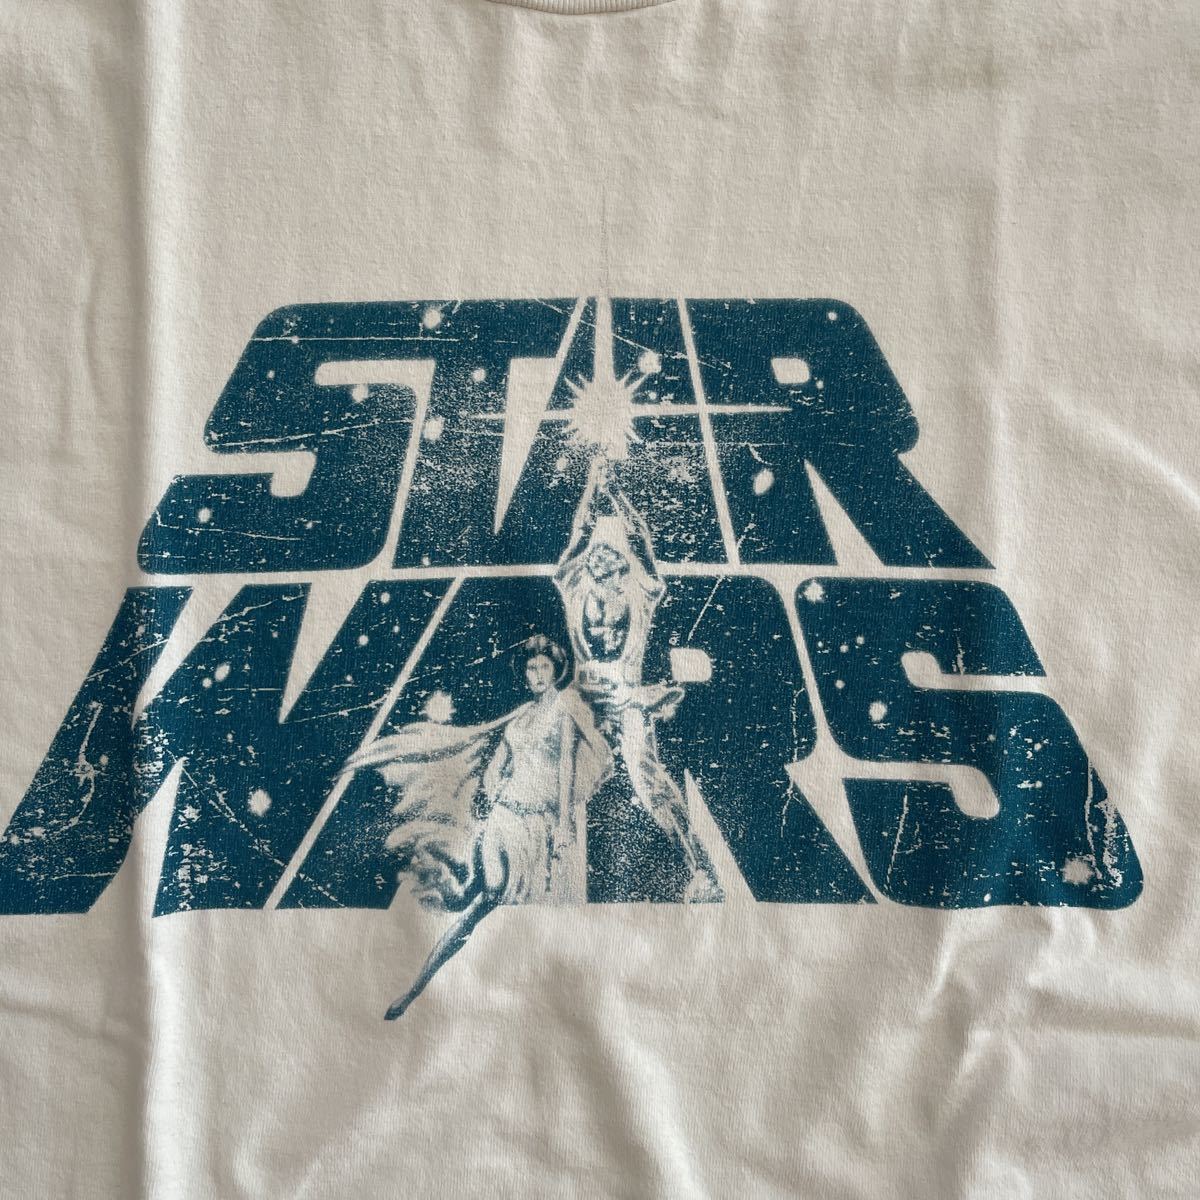 star wars スターウォーズ エピソード4のデザインのTシャツ 大き目なSサイズ 白_画像4